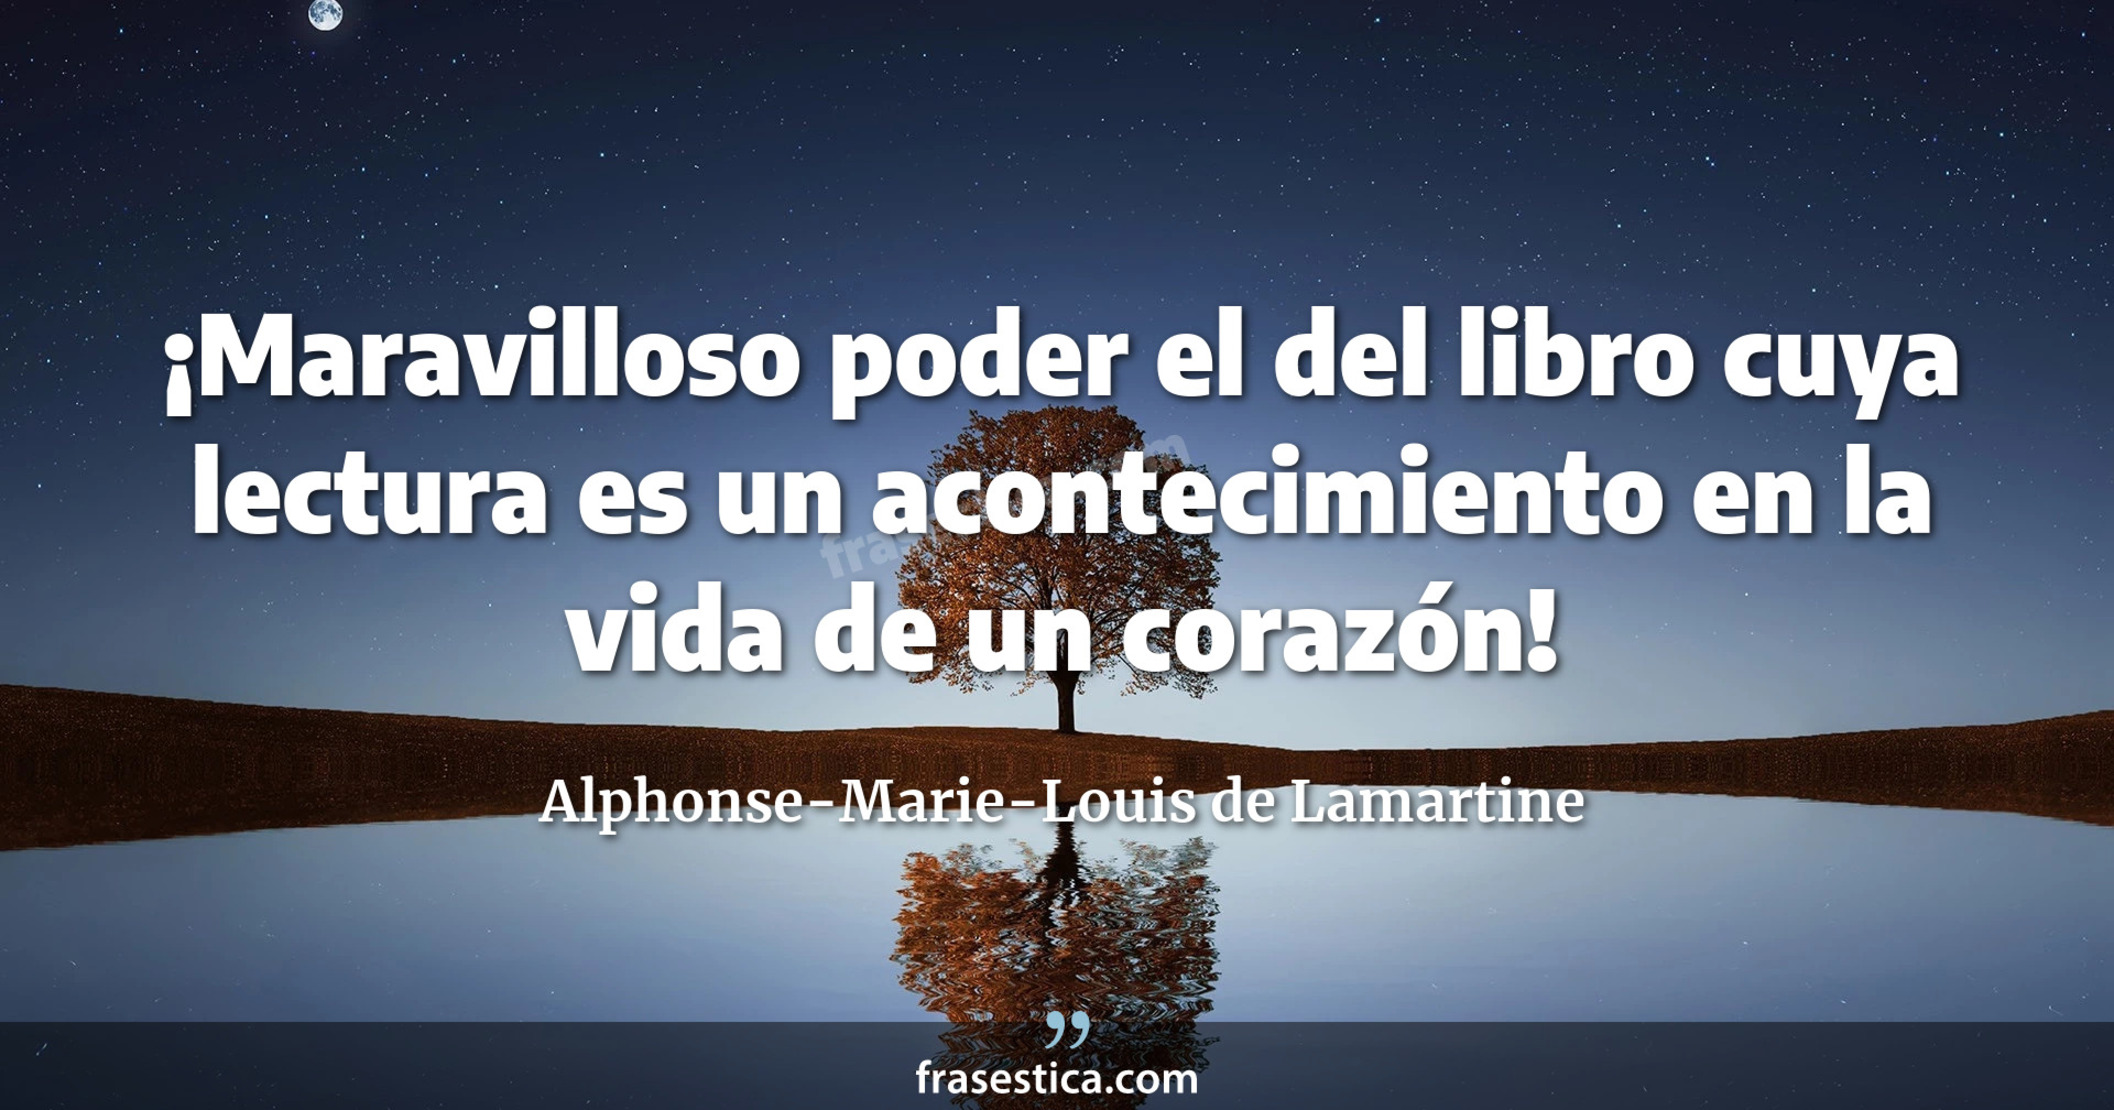 ¡Maravilloso poder el del libro cuya lectura es un acontecimiento en la vida de un corazón! - Alphonse-Marie-Louis de Lamartine